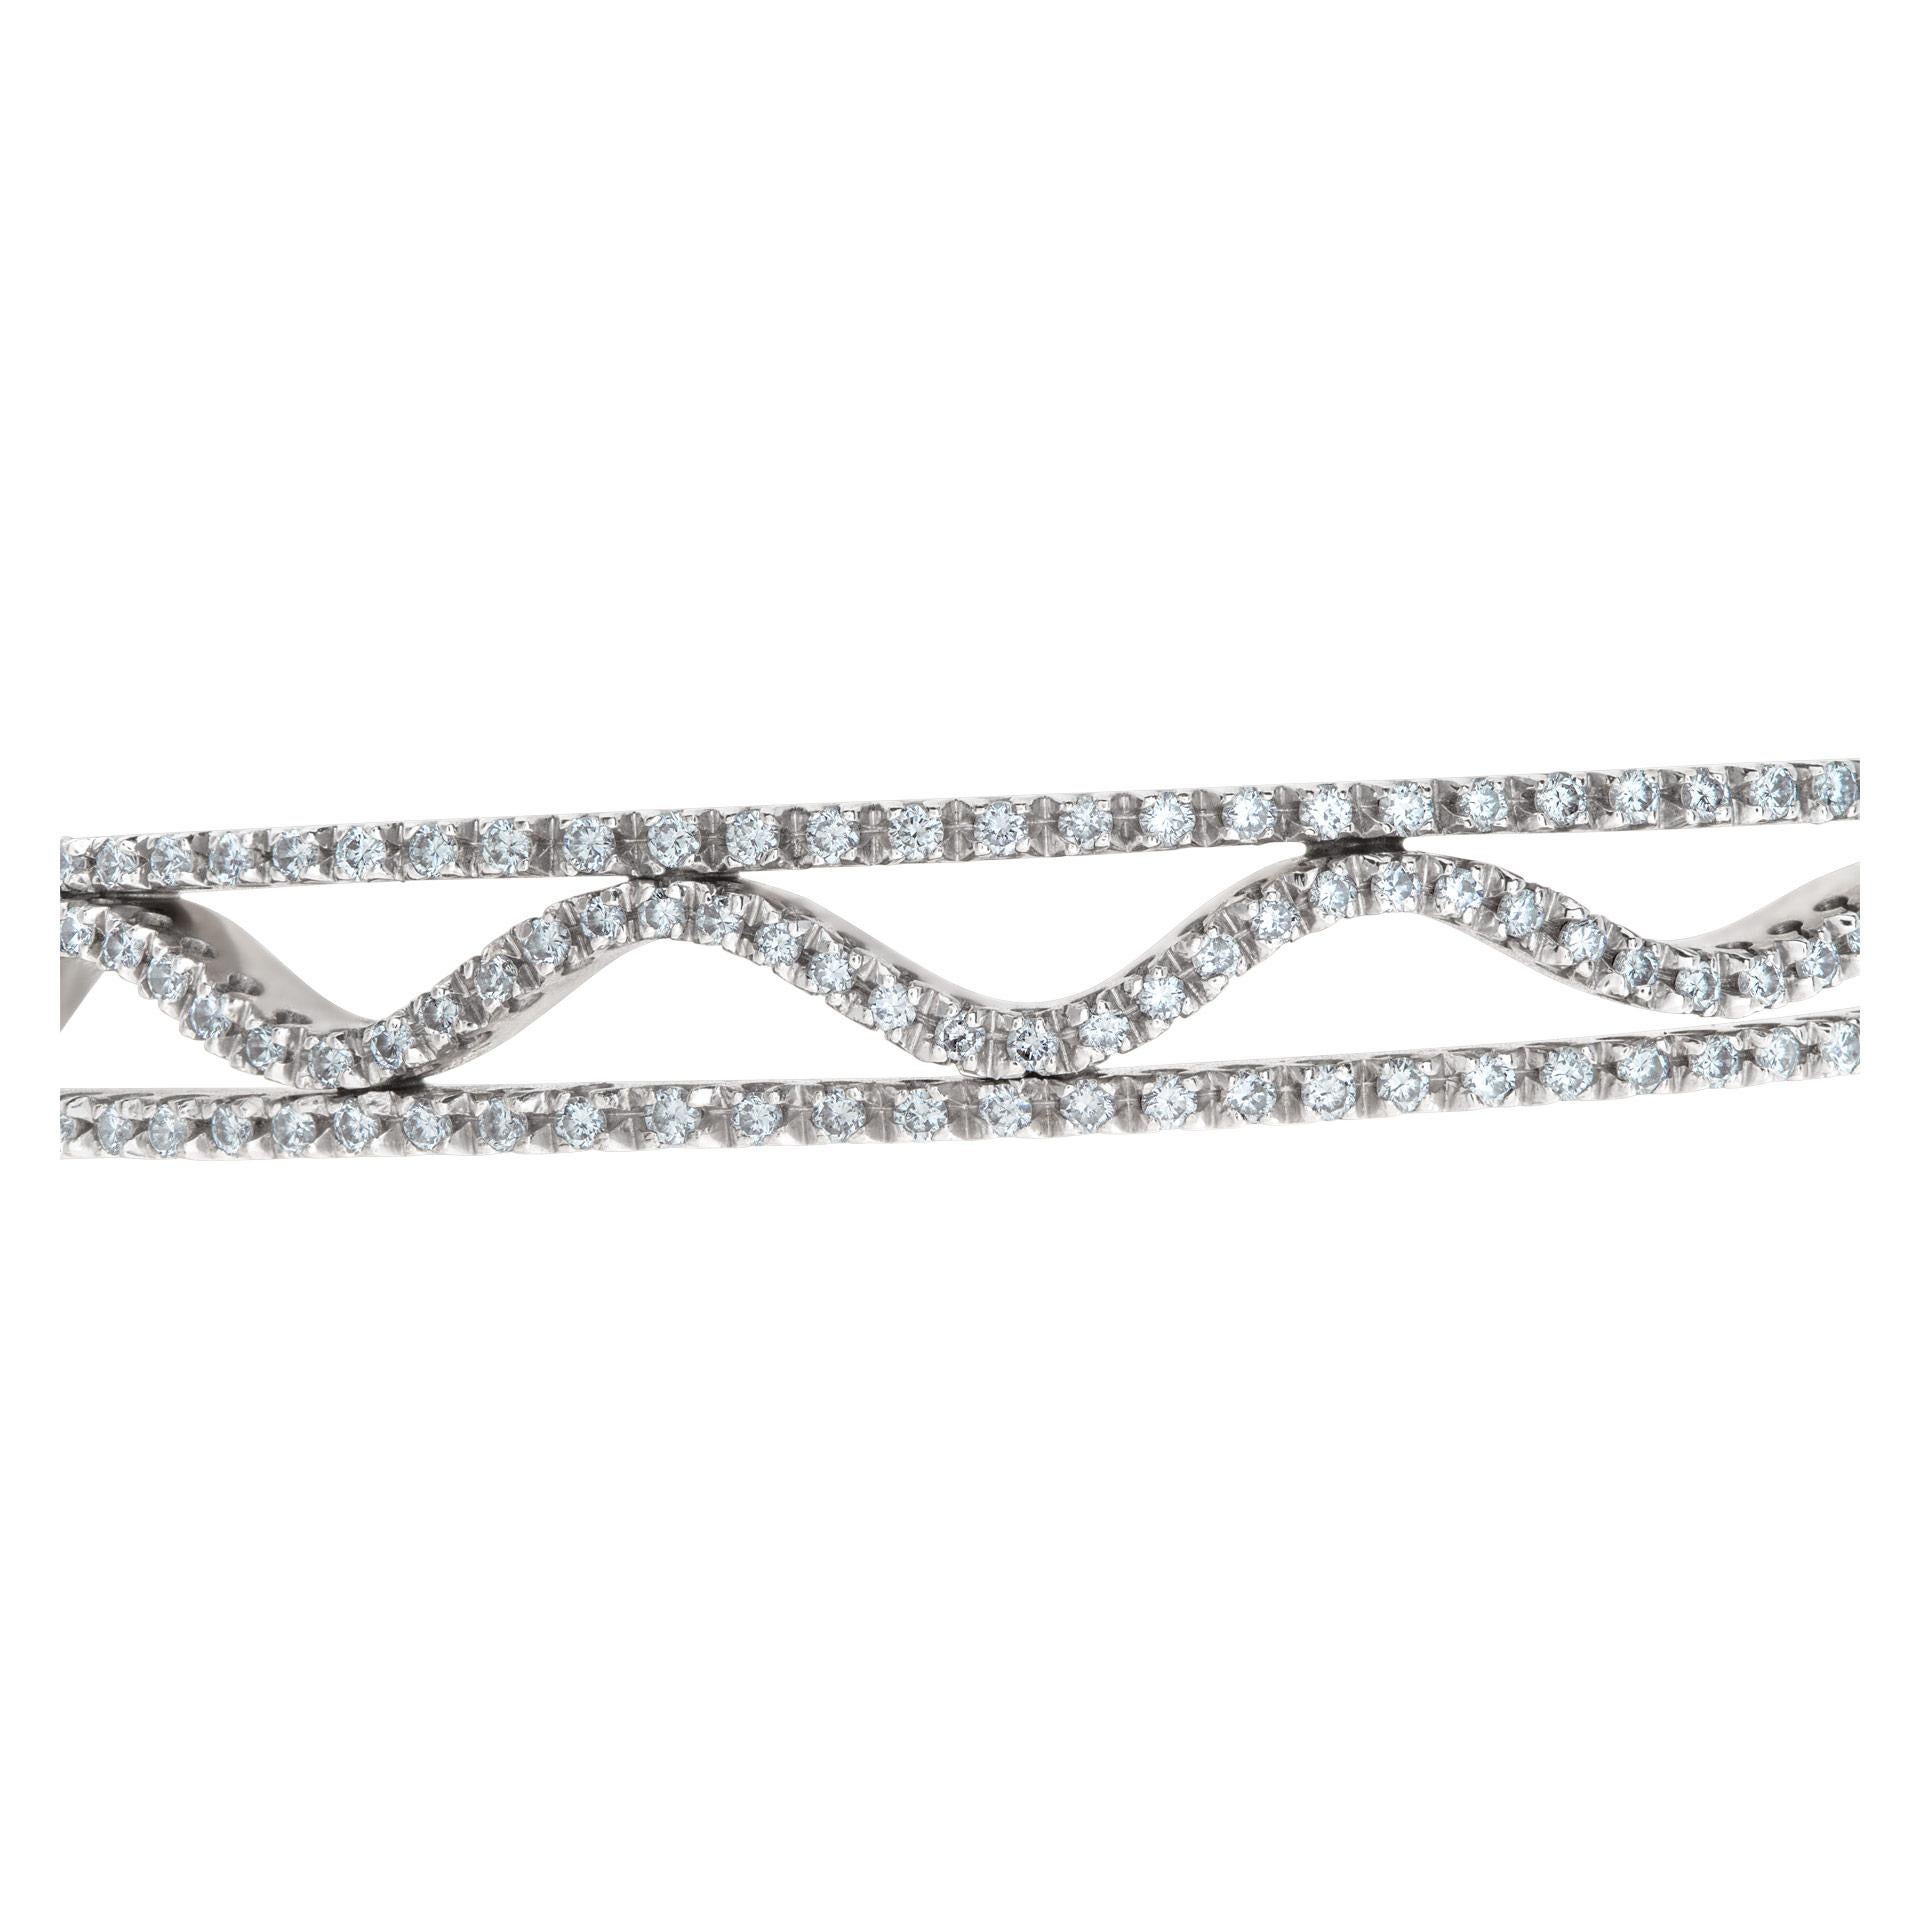 Magnifique bracelet en forme de vague avec environ 2 carats de diamants en or blanc 14k. Convient aux poignets de 6